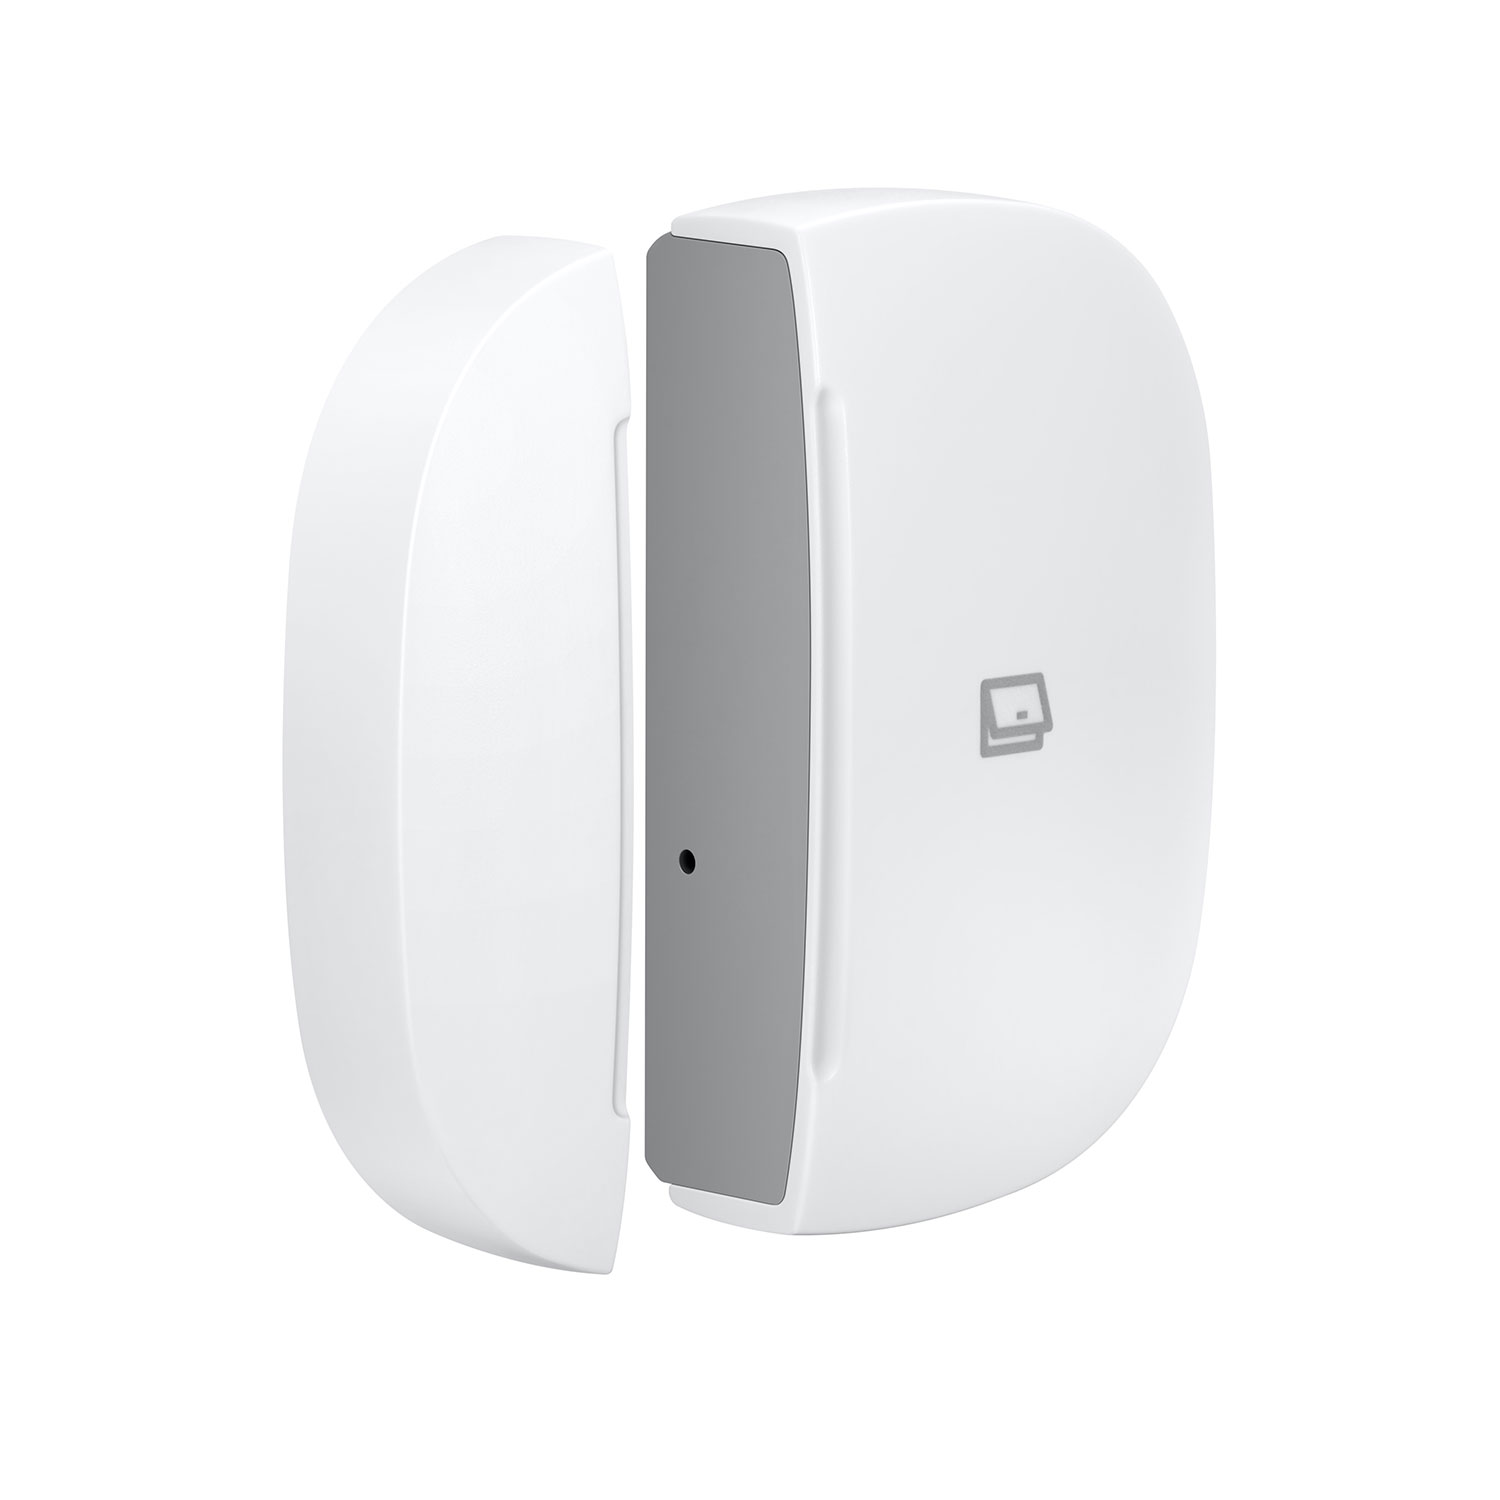 Multipurpose Sensor Weiß Tür-Fenster-Kontakt AEOTEC SMARTTHINGS SmartThings Zigbee